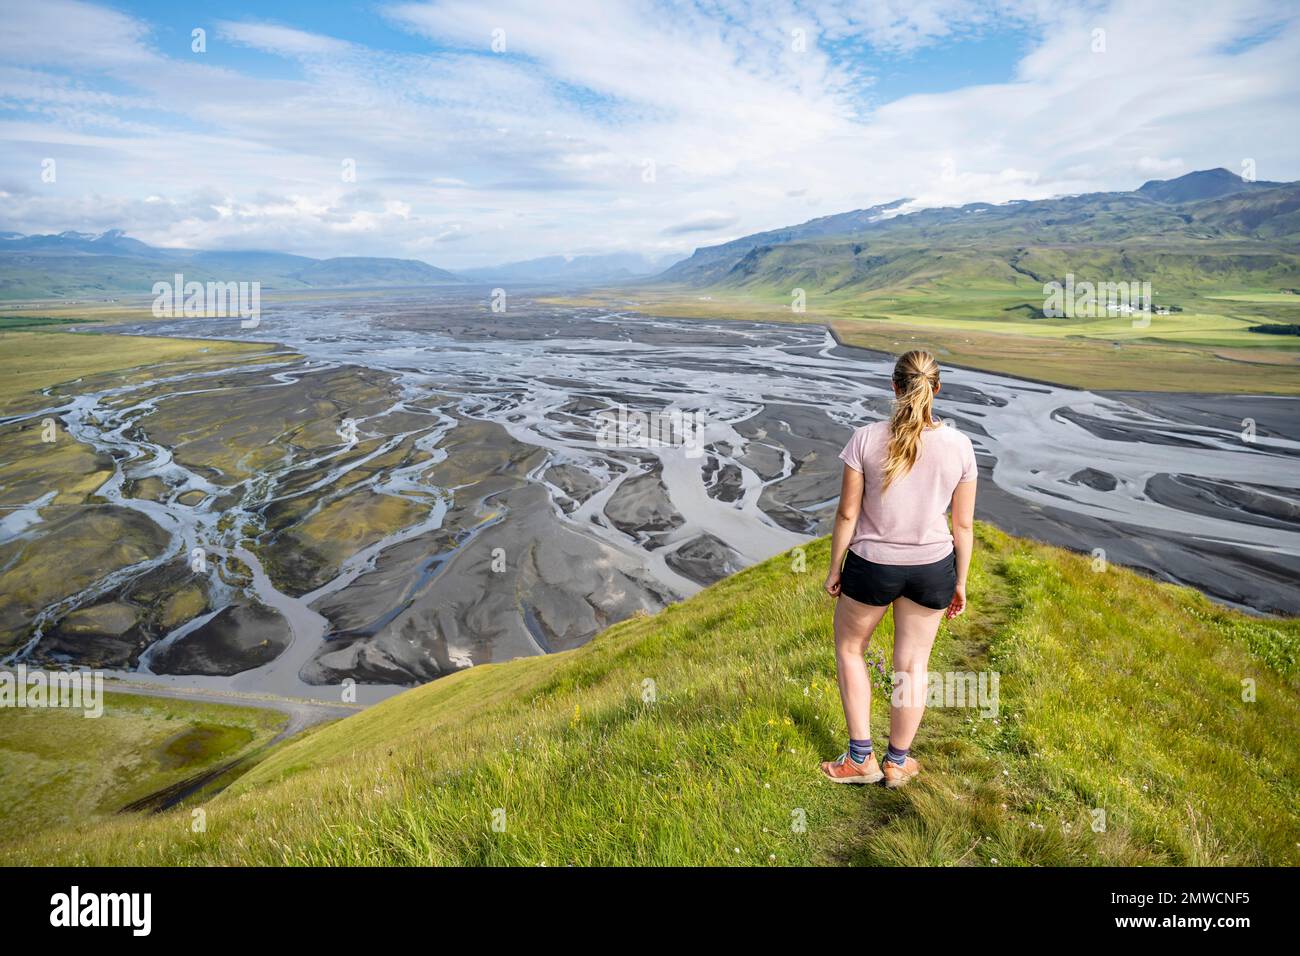 Wandern auf einem Hügel, Blick auf Schwemmland und Flusslandschaft, Flussmander, Dimonarhellir, Suourland, Island Stockfoto